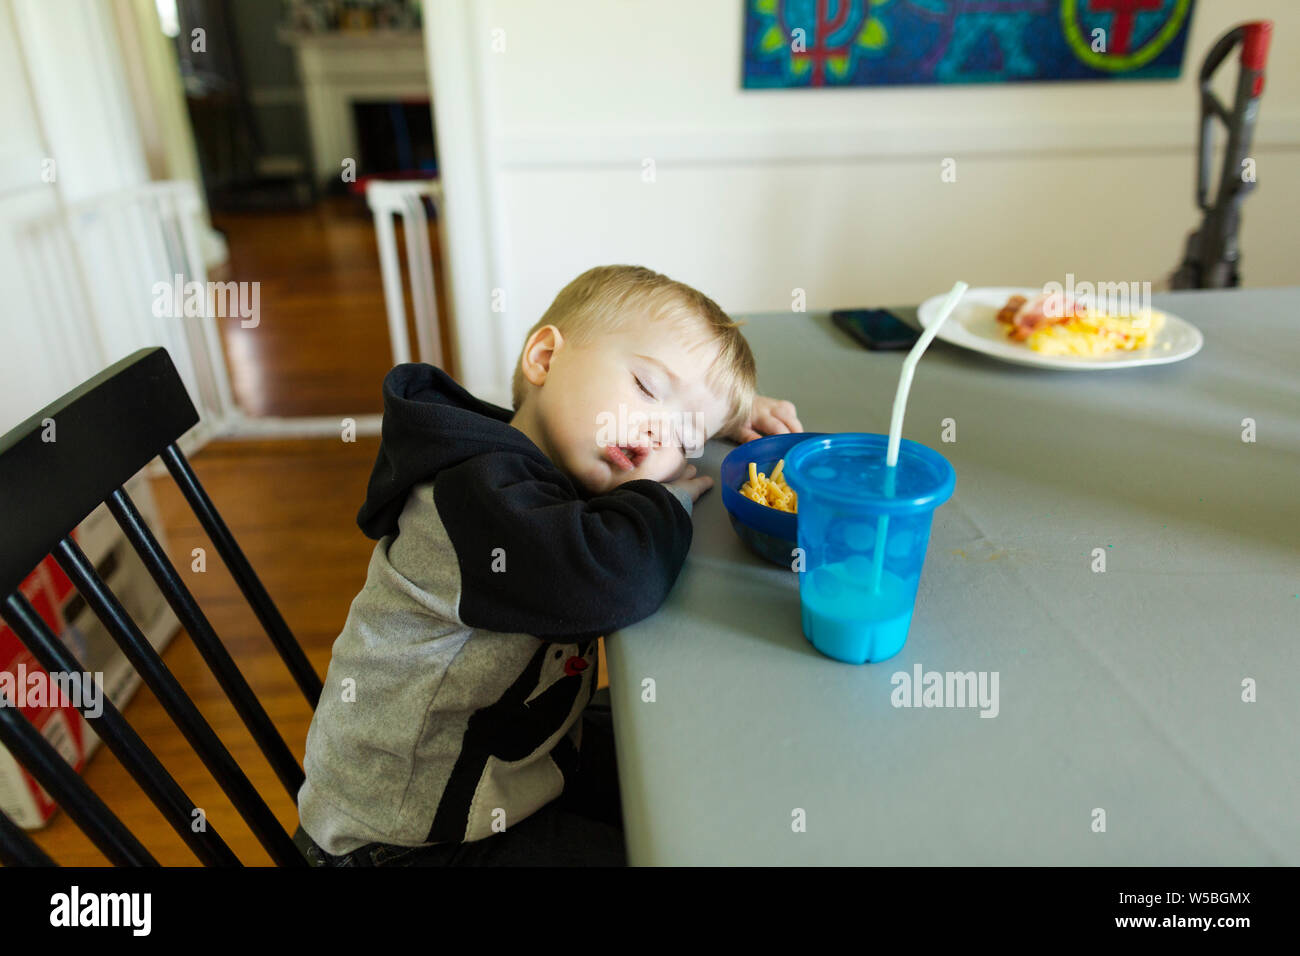 Kleinkind junge schlafend in Stuhl am Esstisch während den Mahlzeiten Stockfoto